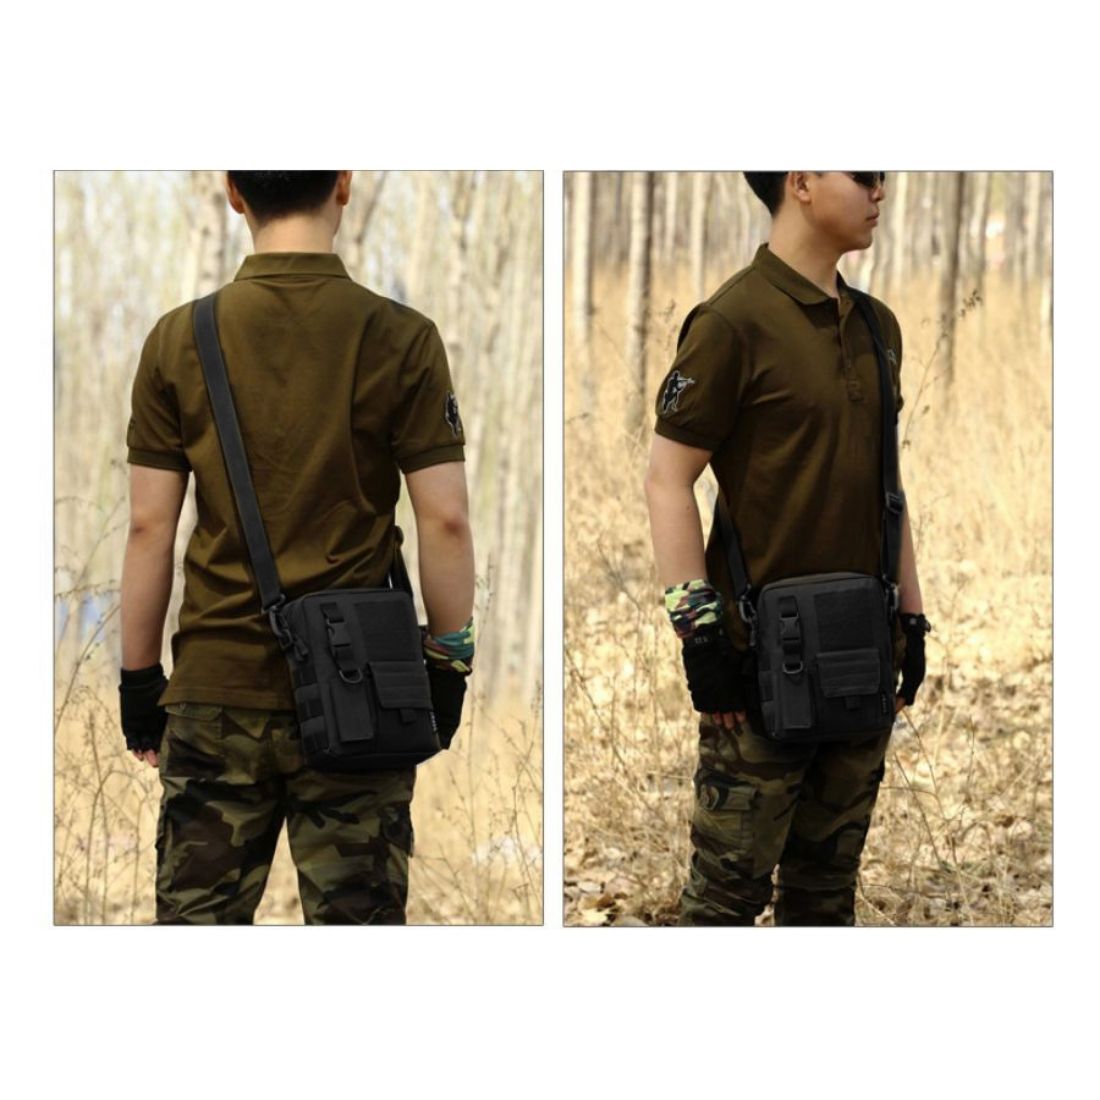 Tiger Tactical Shoulder Sling Bag Large Black For Travel